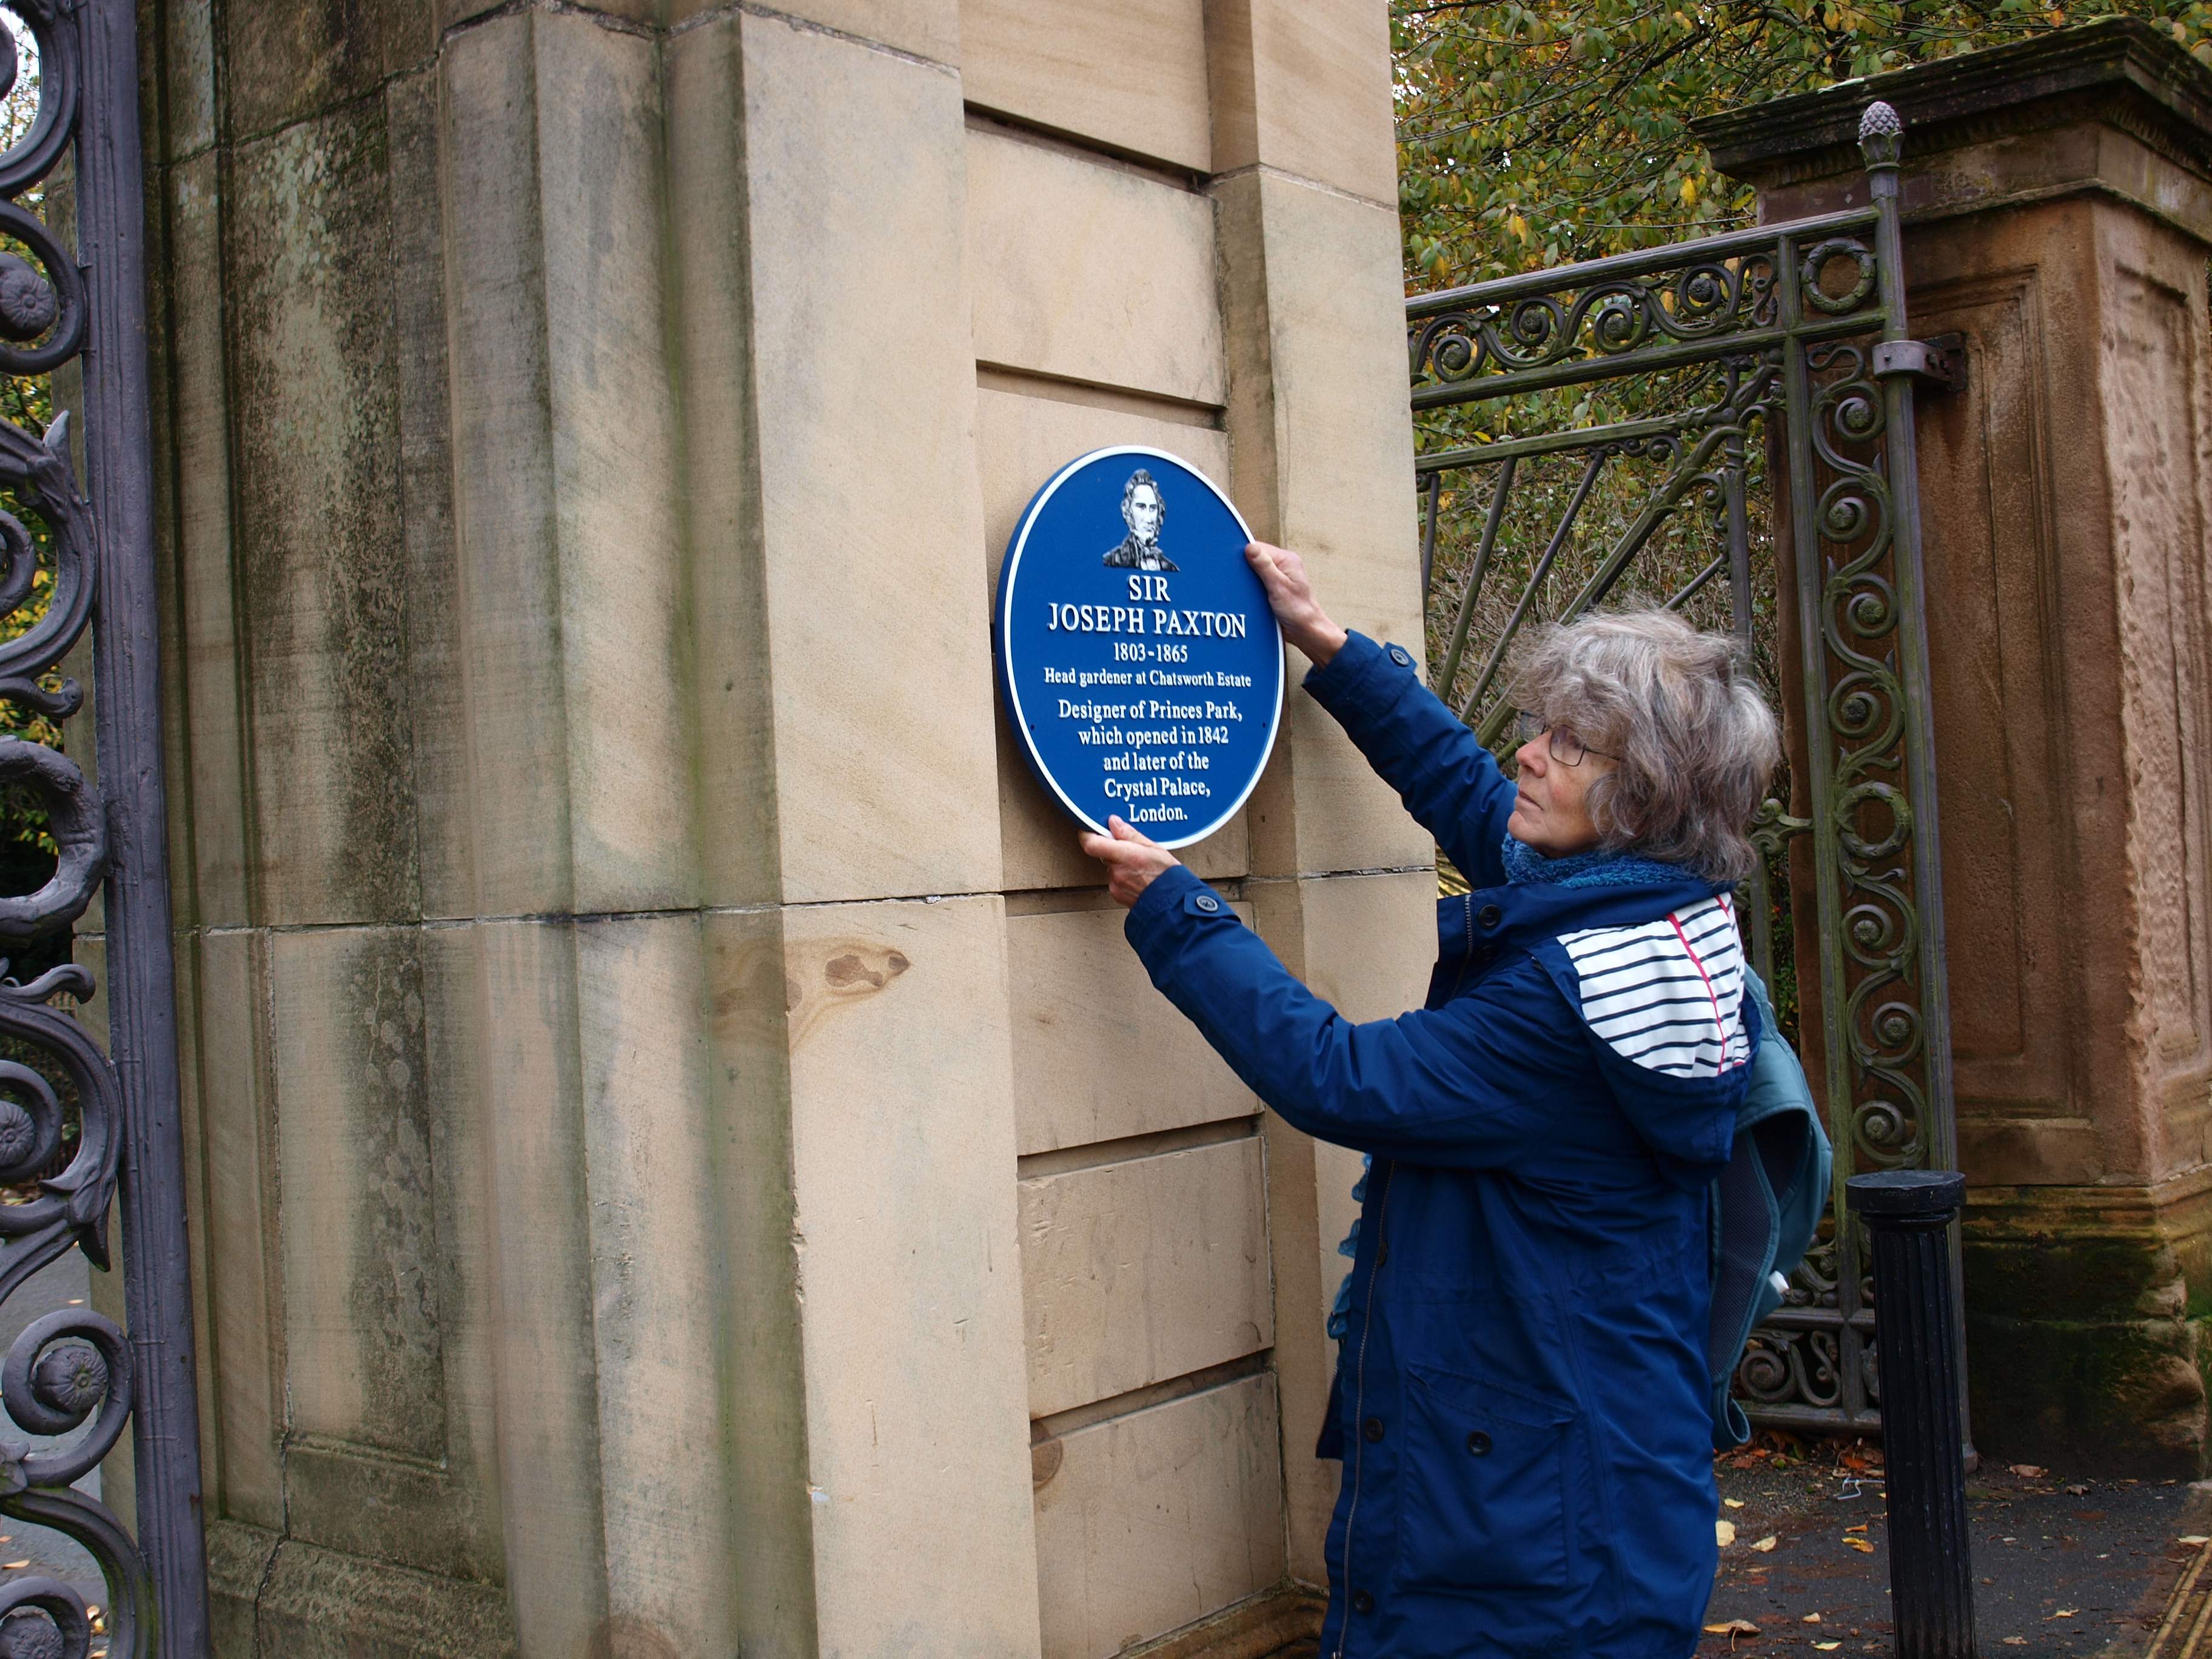 The Princes Park Blue plaque